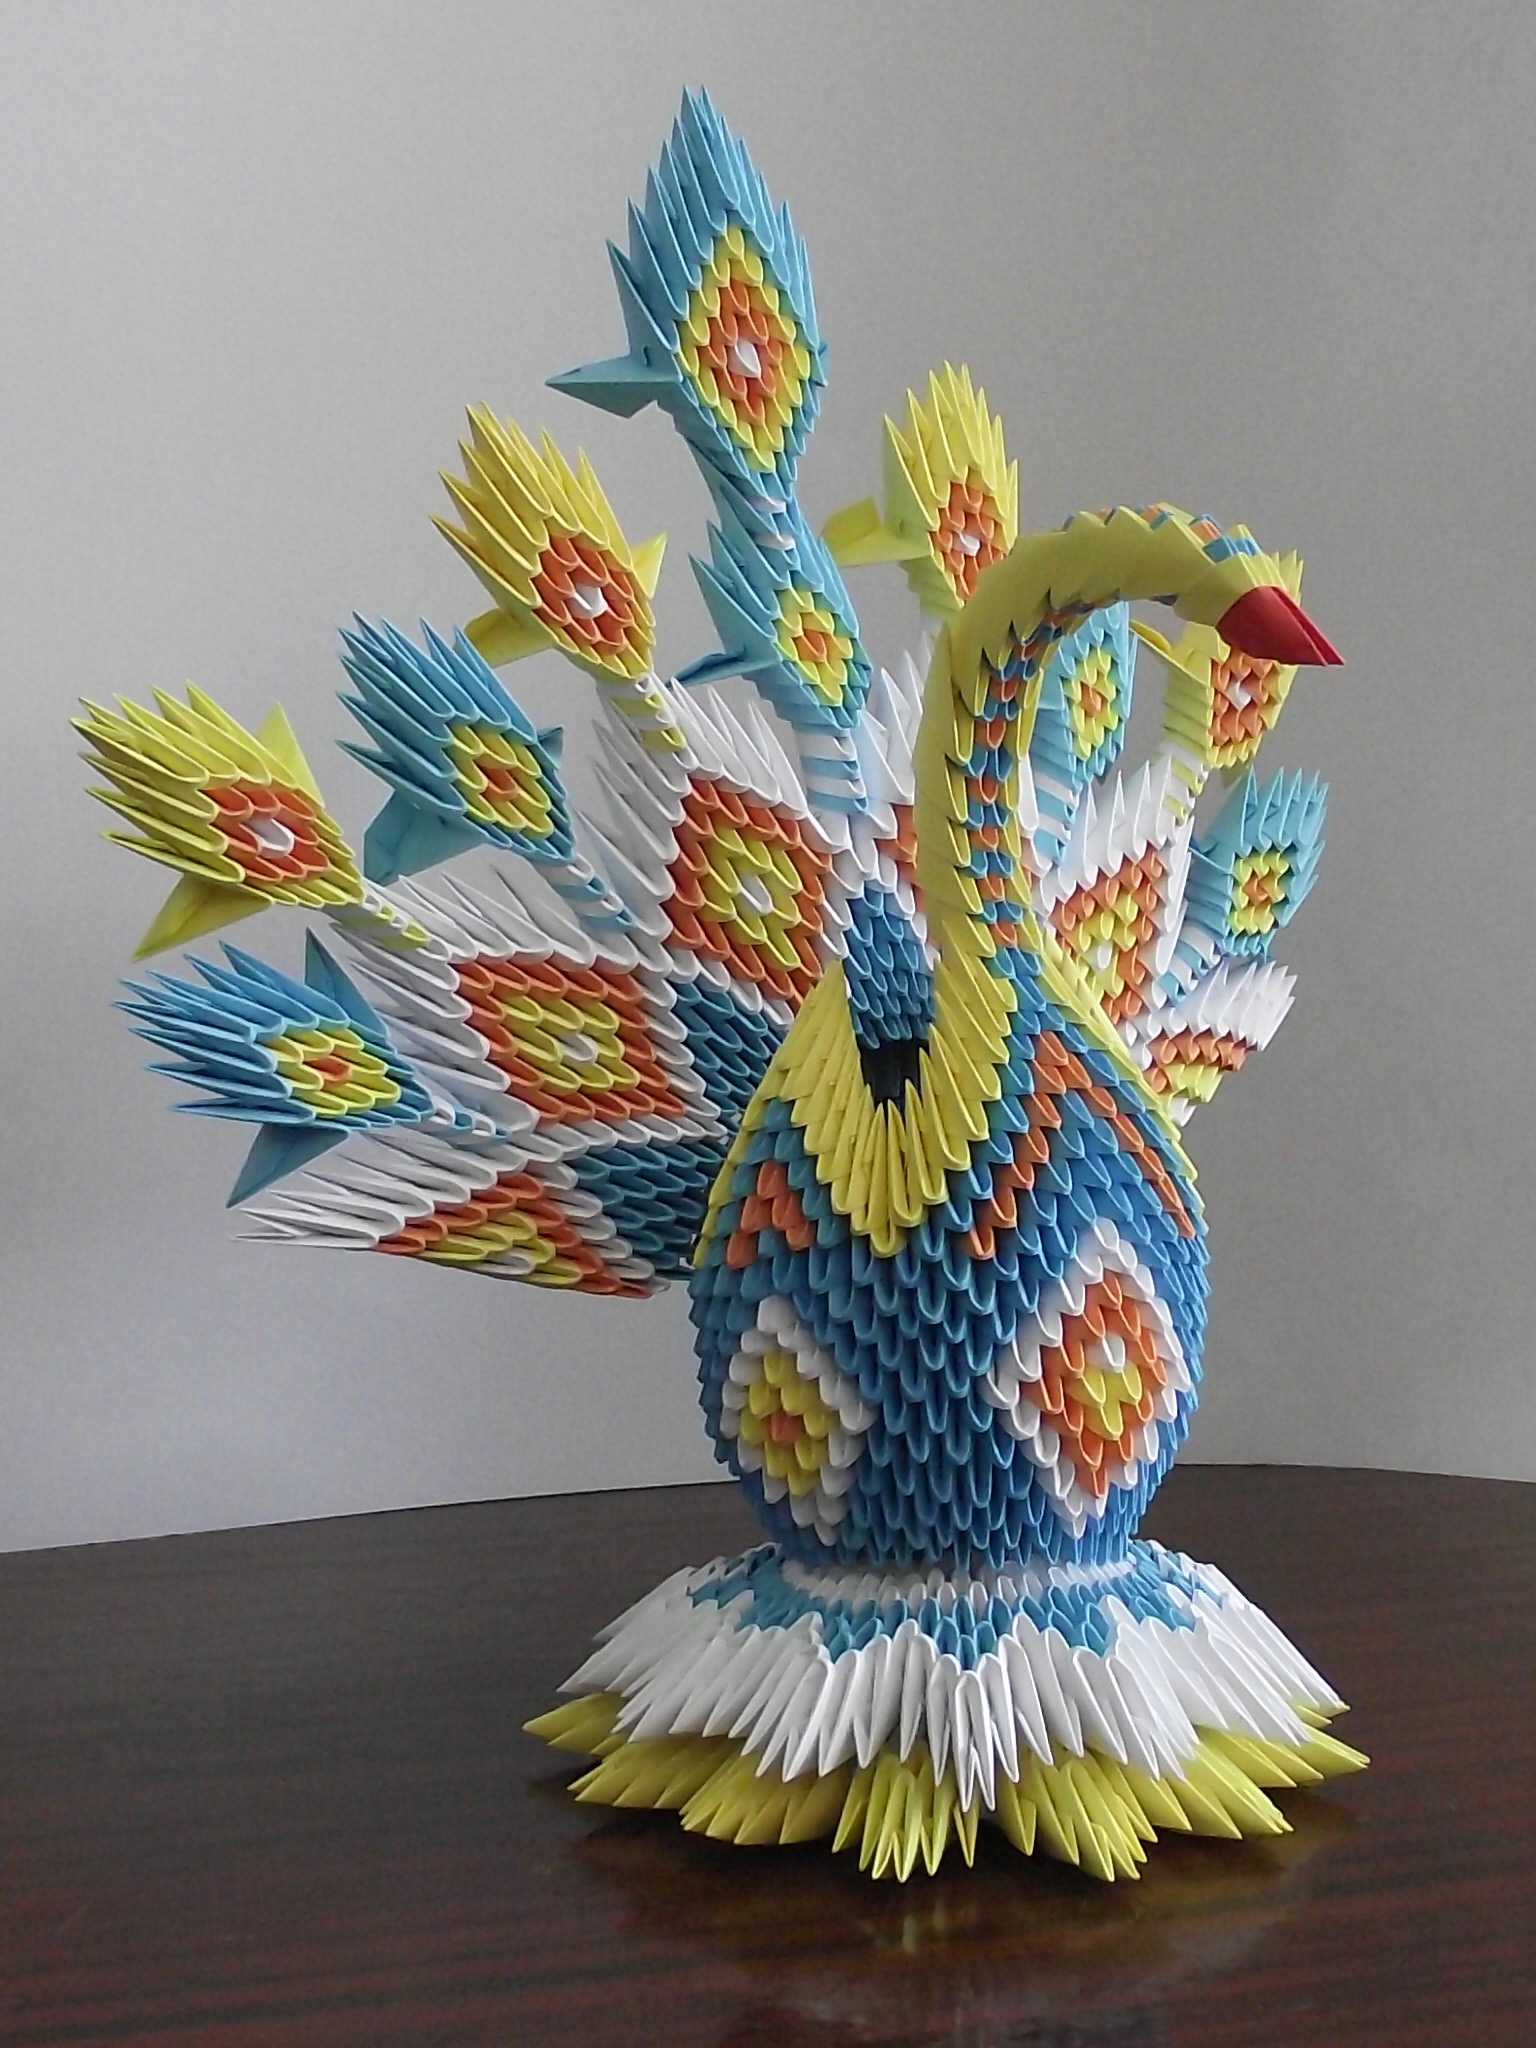 Оригами птица — разновидности восточного творчества, описание, схемы и рекомендации, как собрать птицу оригами своими руками. 80 фото птиц на счастье